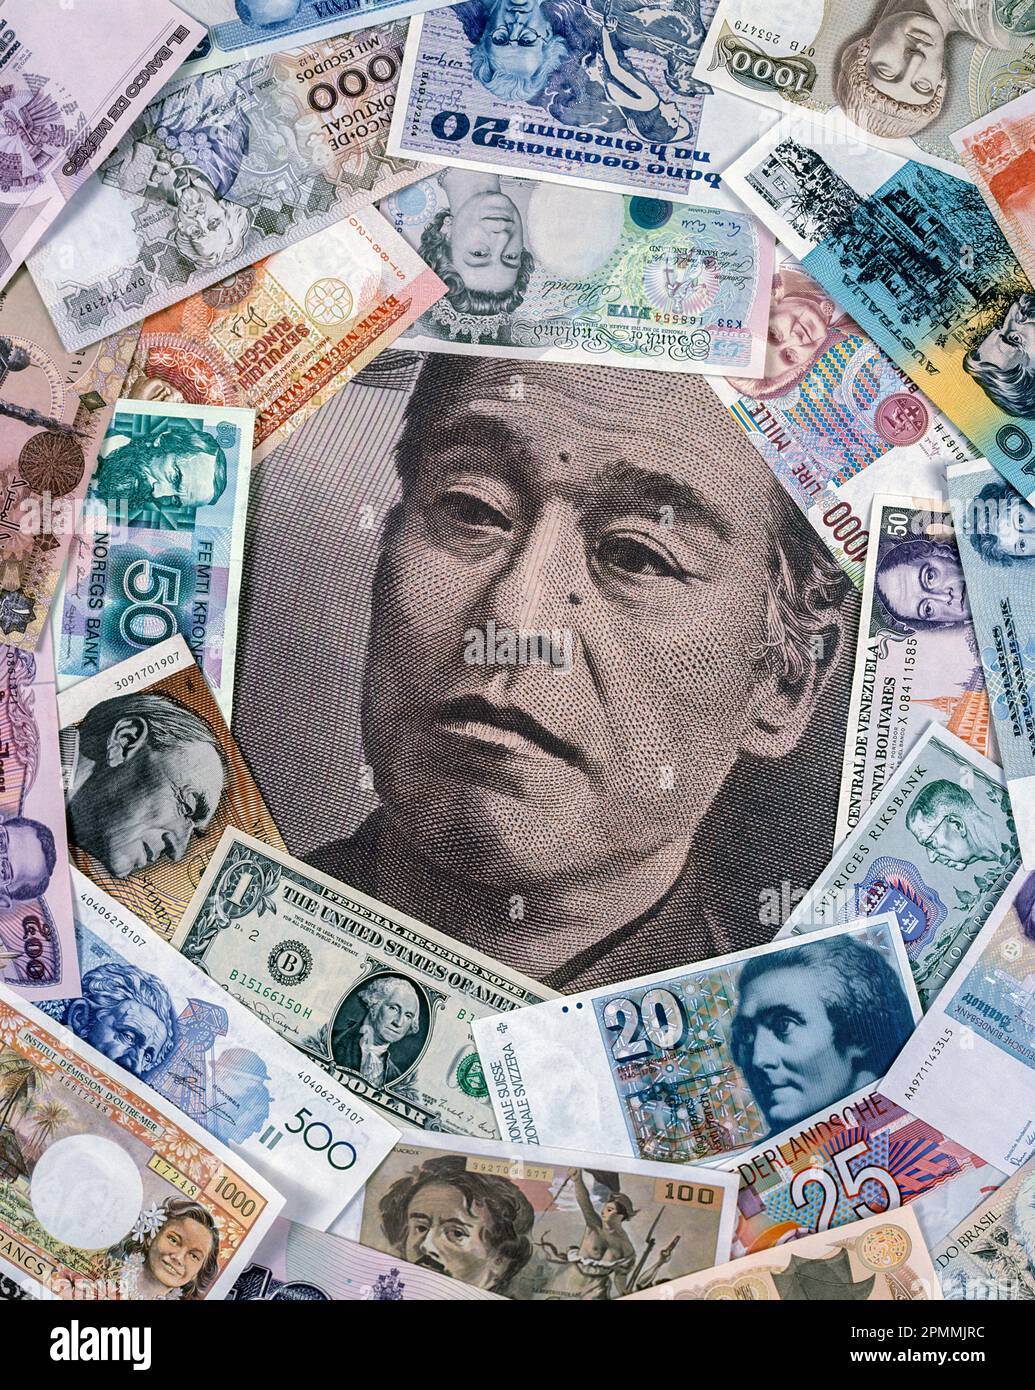 1991 GÉANT HISTORIQUE JAPONAIS 10000 YENS BILLET DE BANQUE ENCERCLÉ PAR DES BILLETS DE BANQUE NATIONAUX Banque D'Images